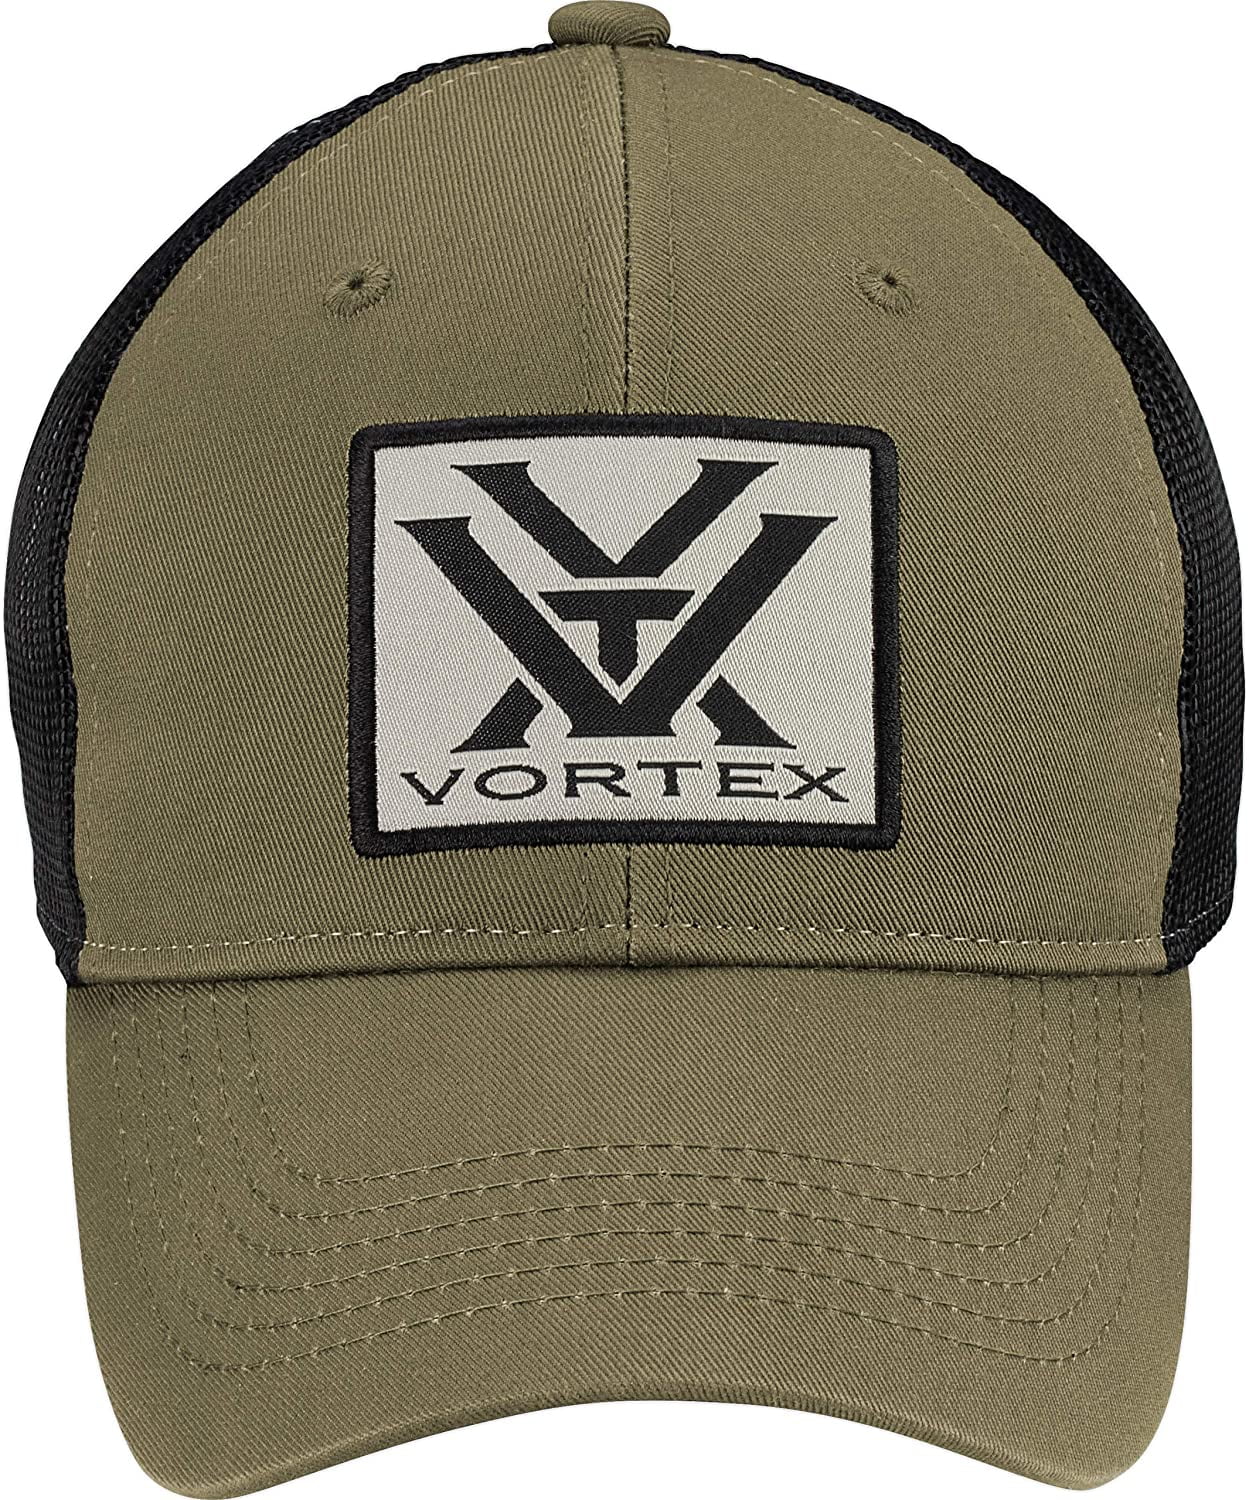 VORTEX OPTICS Vintage Cap Hat VINTAGE 